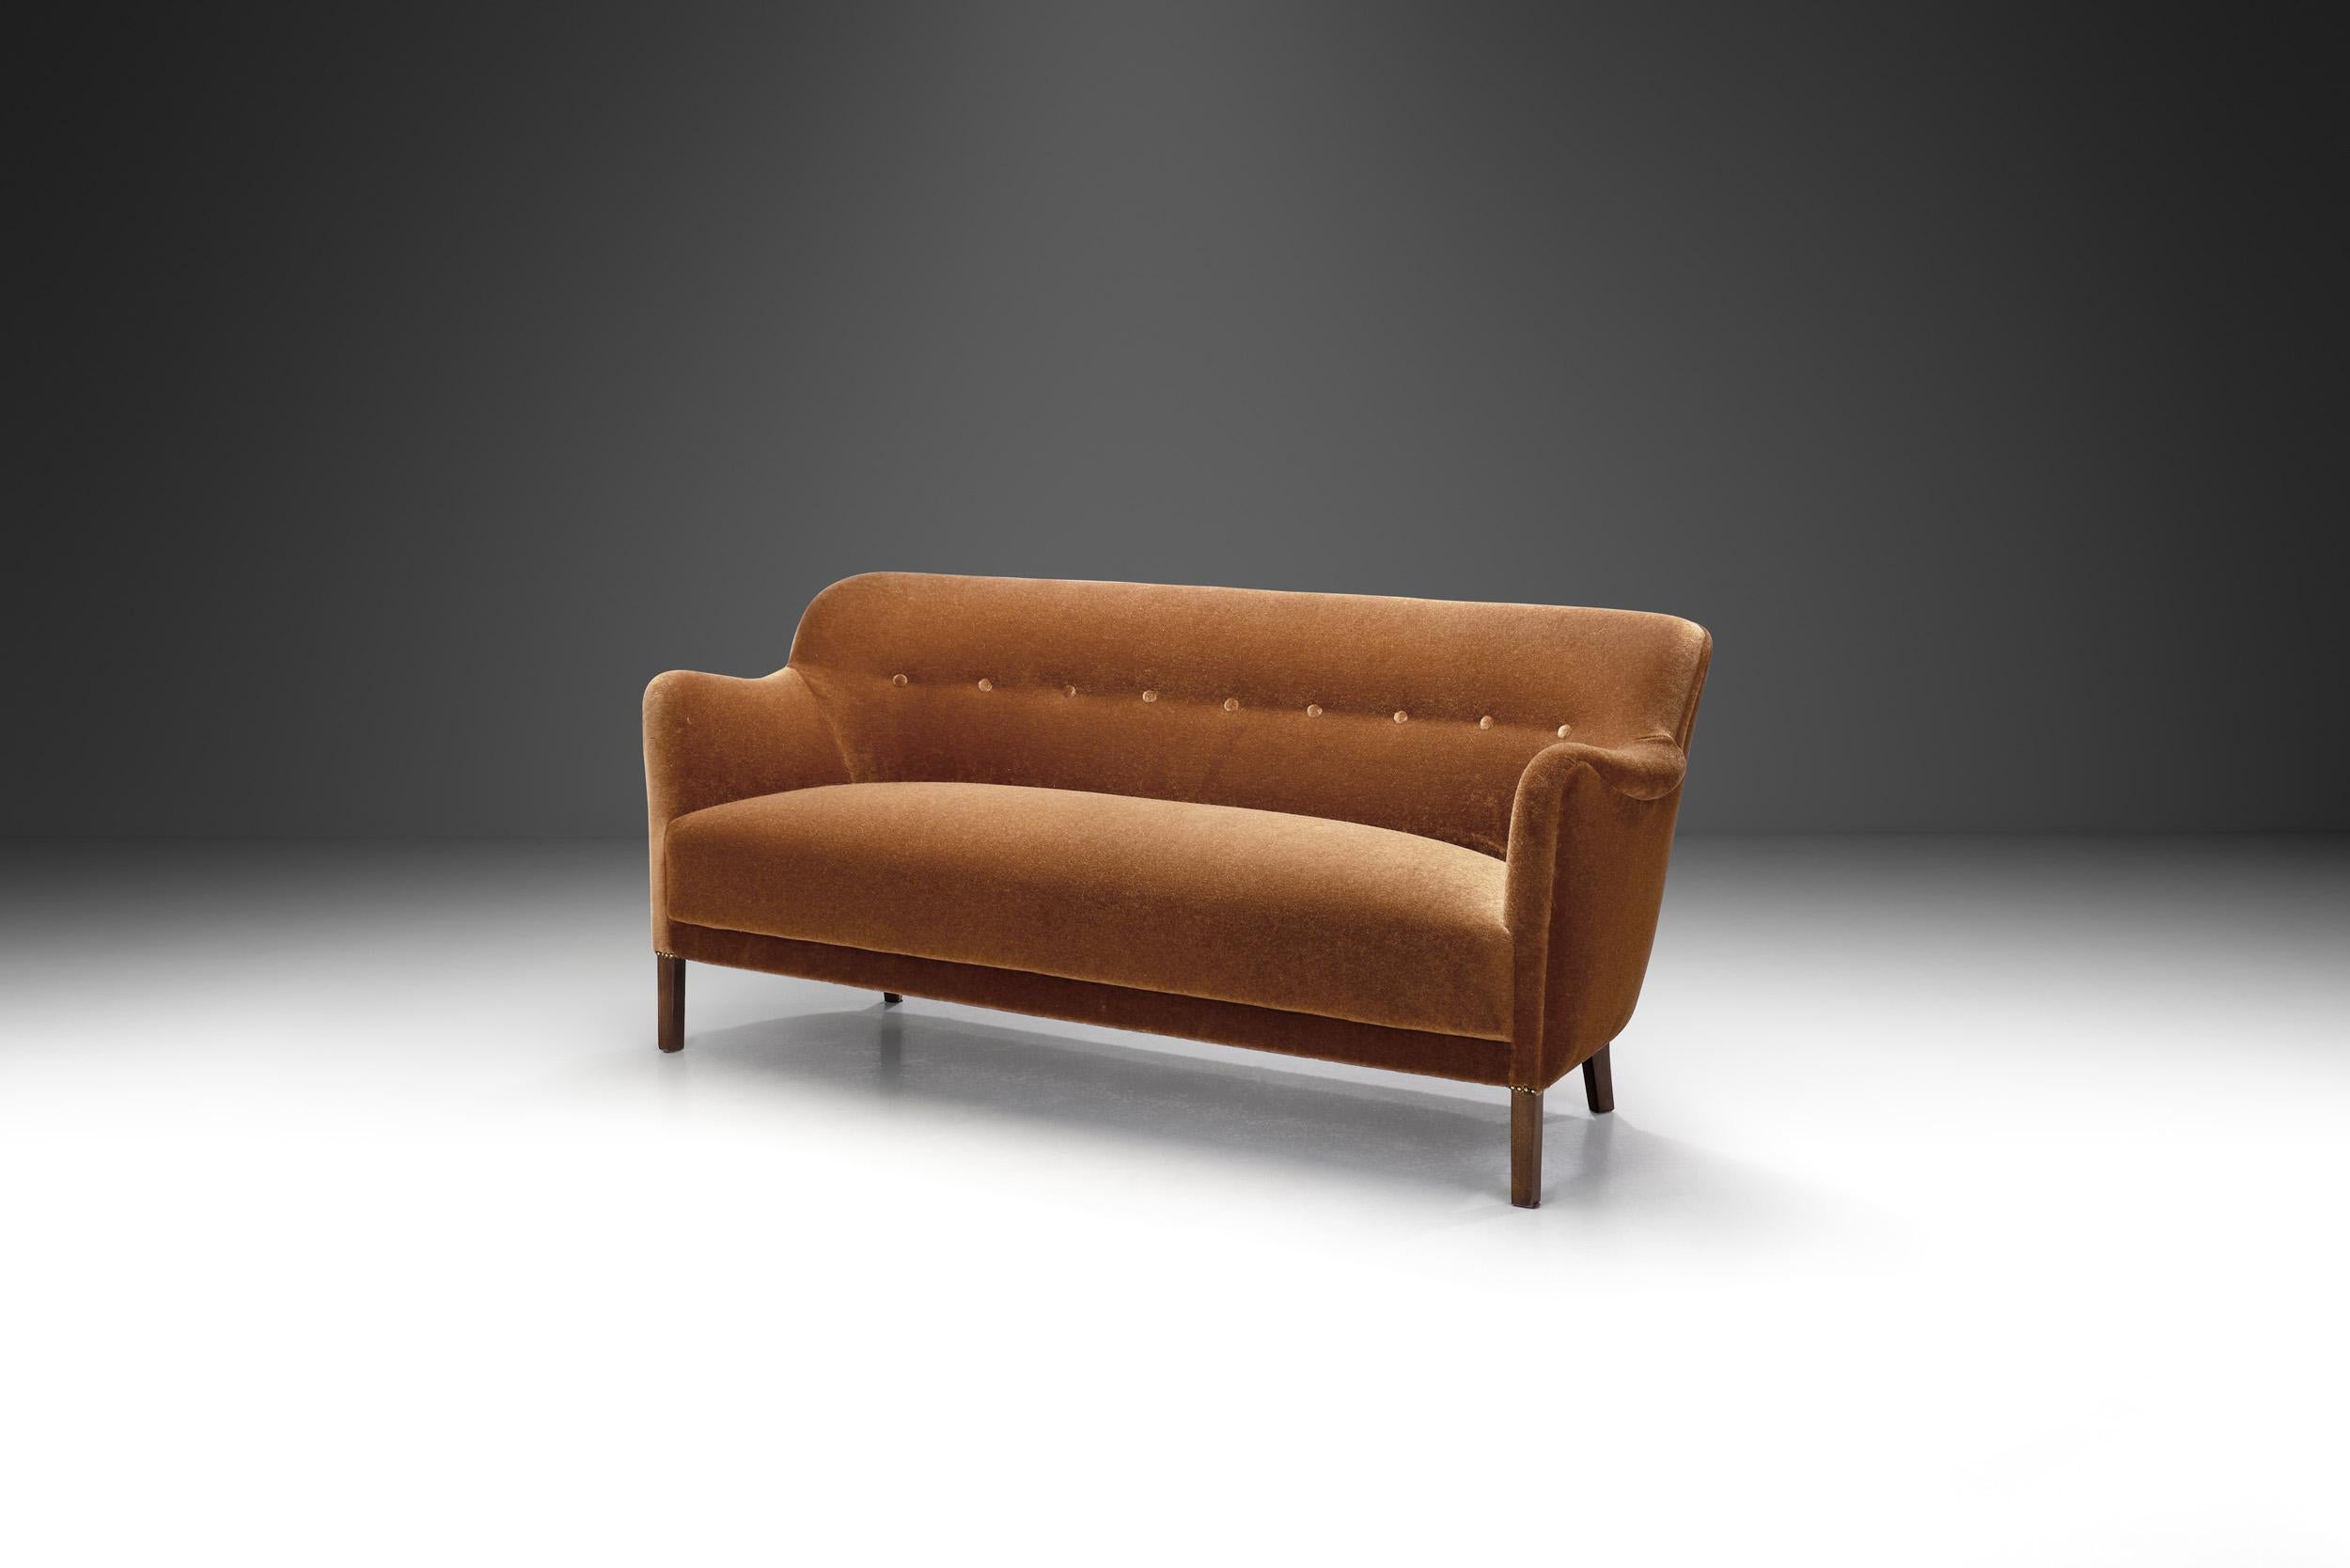 Dieses charmante Sofa wurde in der frühen Phase dessen entworfen, was wir heute als Mid-Century Modern bezeichnen. Es ist ein Beweis dafür, wie die traditionelle dänische Handwerkskunst in die Moderne integriert wurde.

Die geschwungene Rückenlehne